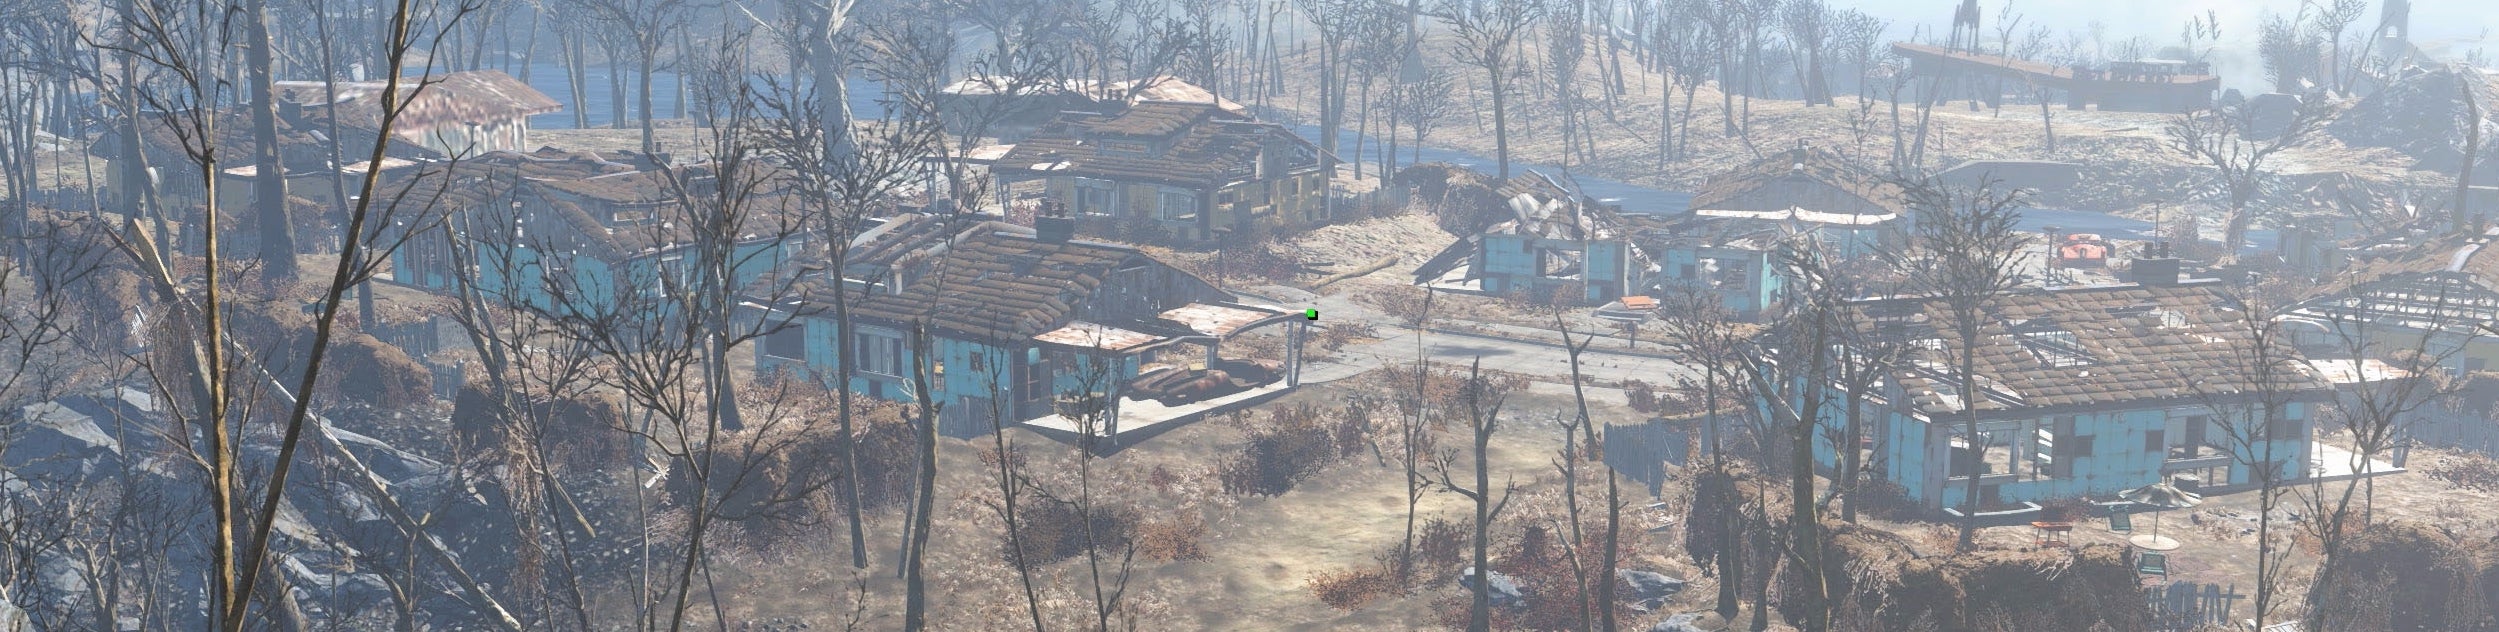 Obrazki dla Digital Foundry: Fallout 4 na Xbox One X oferuje bogate 4K